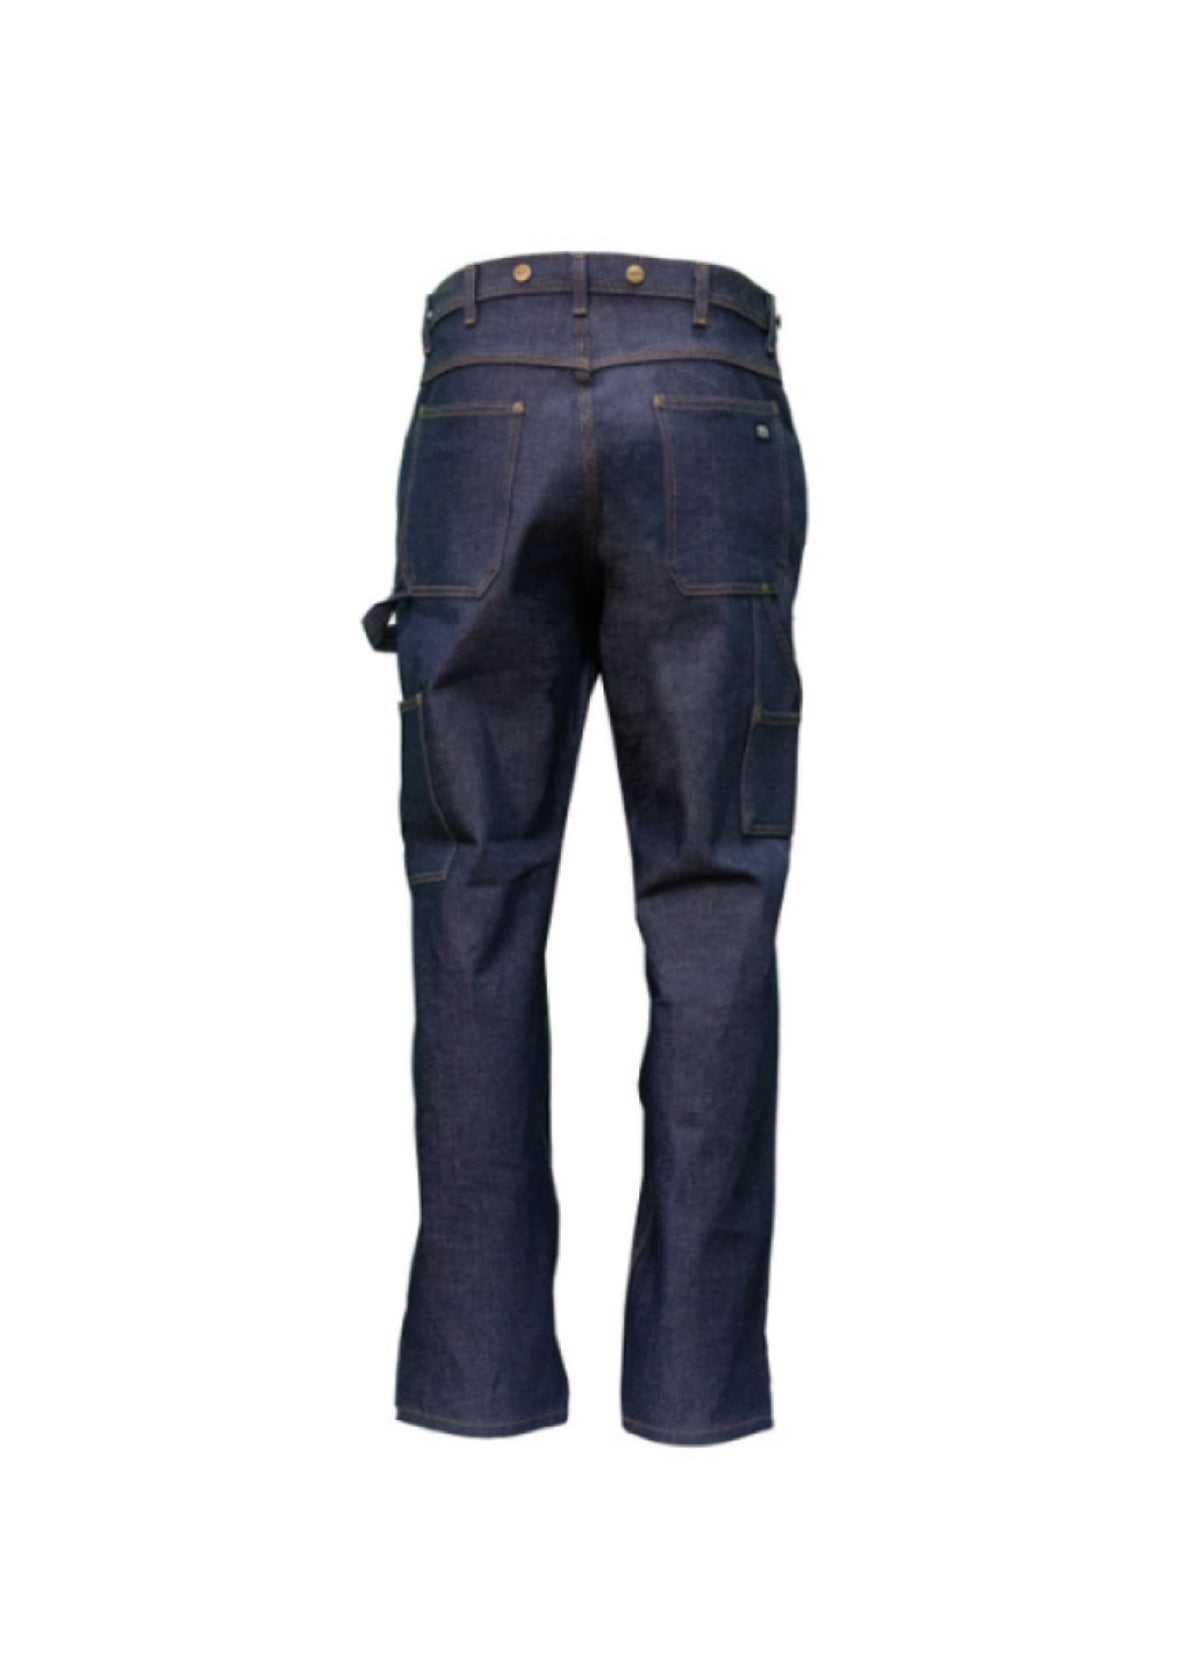 KEYDouble Front Denim Logger - Work World - Workwear, Work Boots, Safety Gear